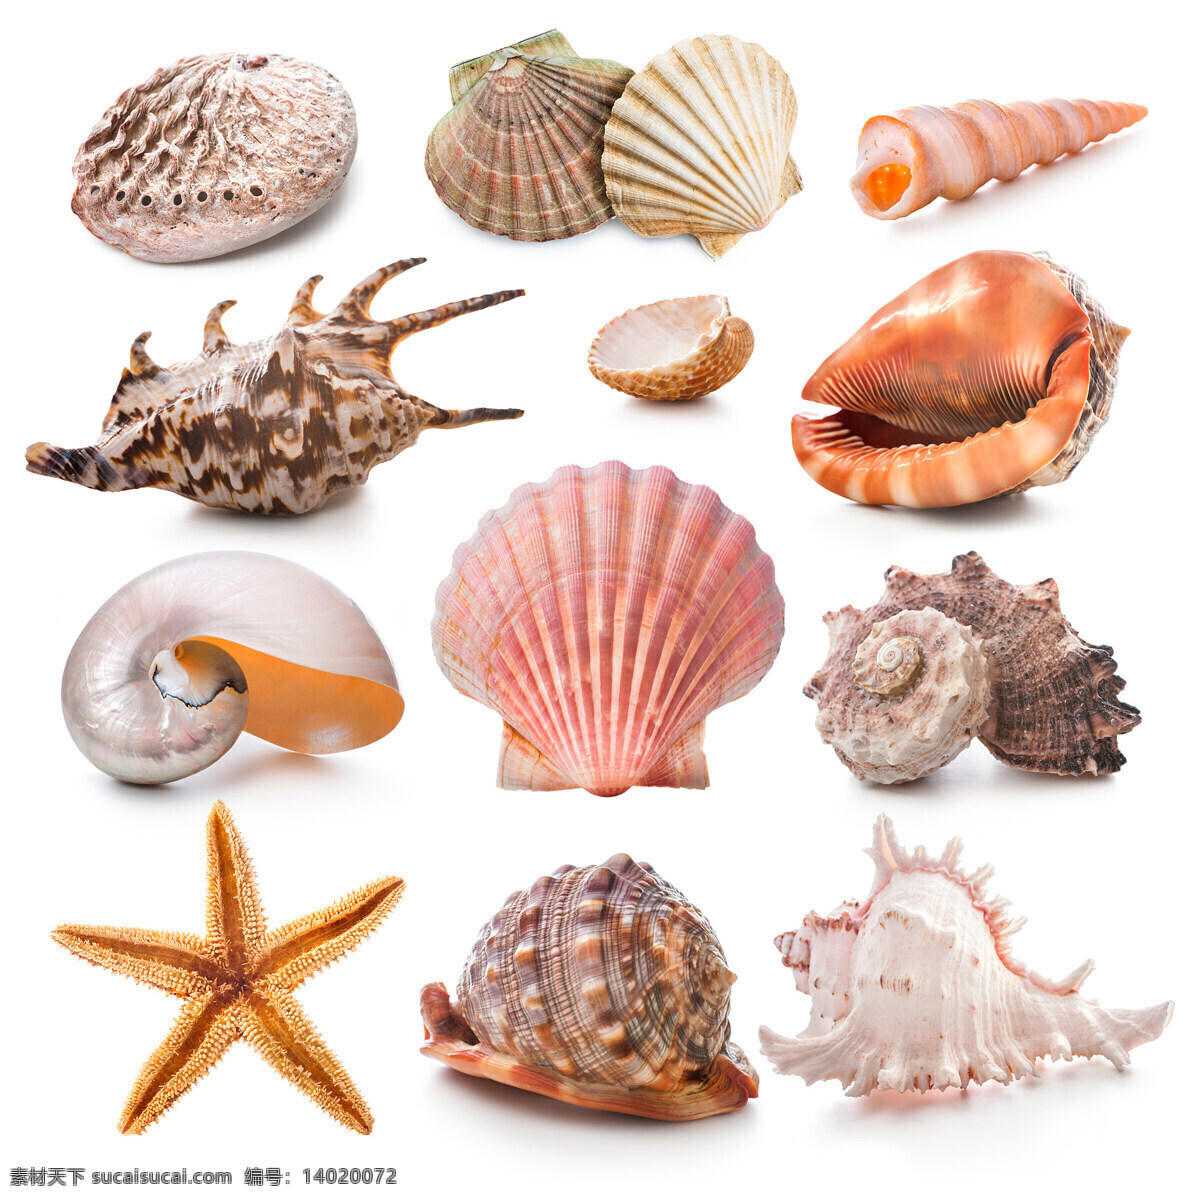 种 海洋 贝类 高清 动物图片 海洋生物 贝壳 扇贝 鹦鹉螺 海星 海螺 高清图片 白色